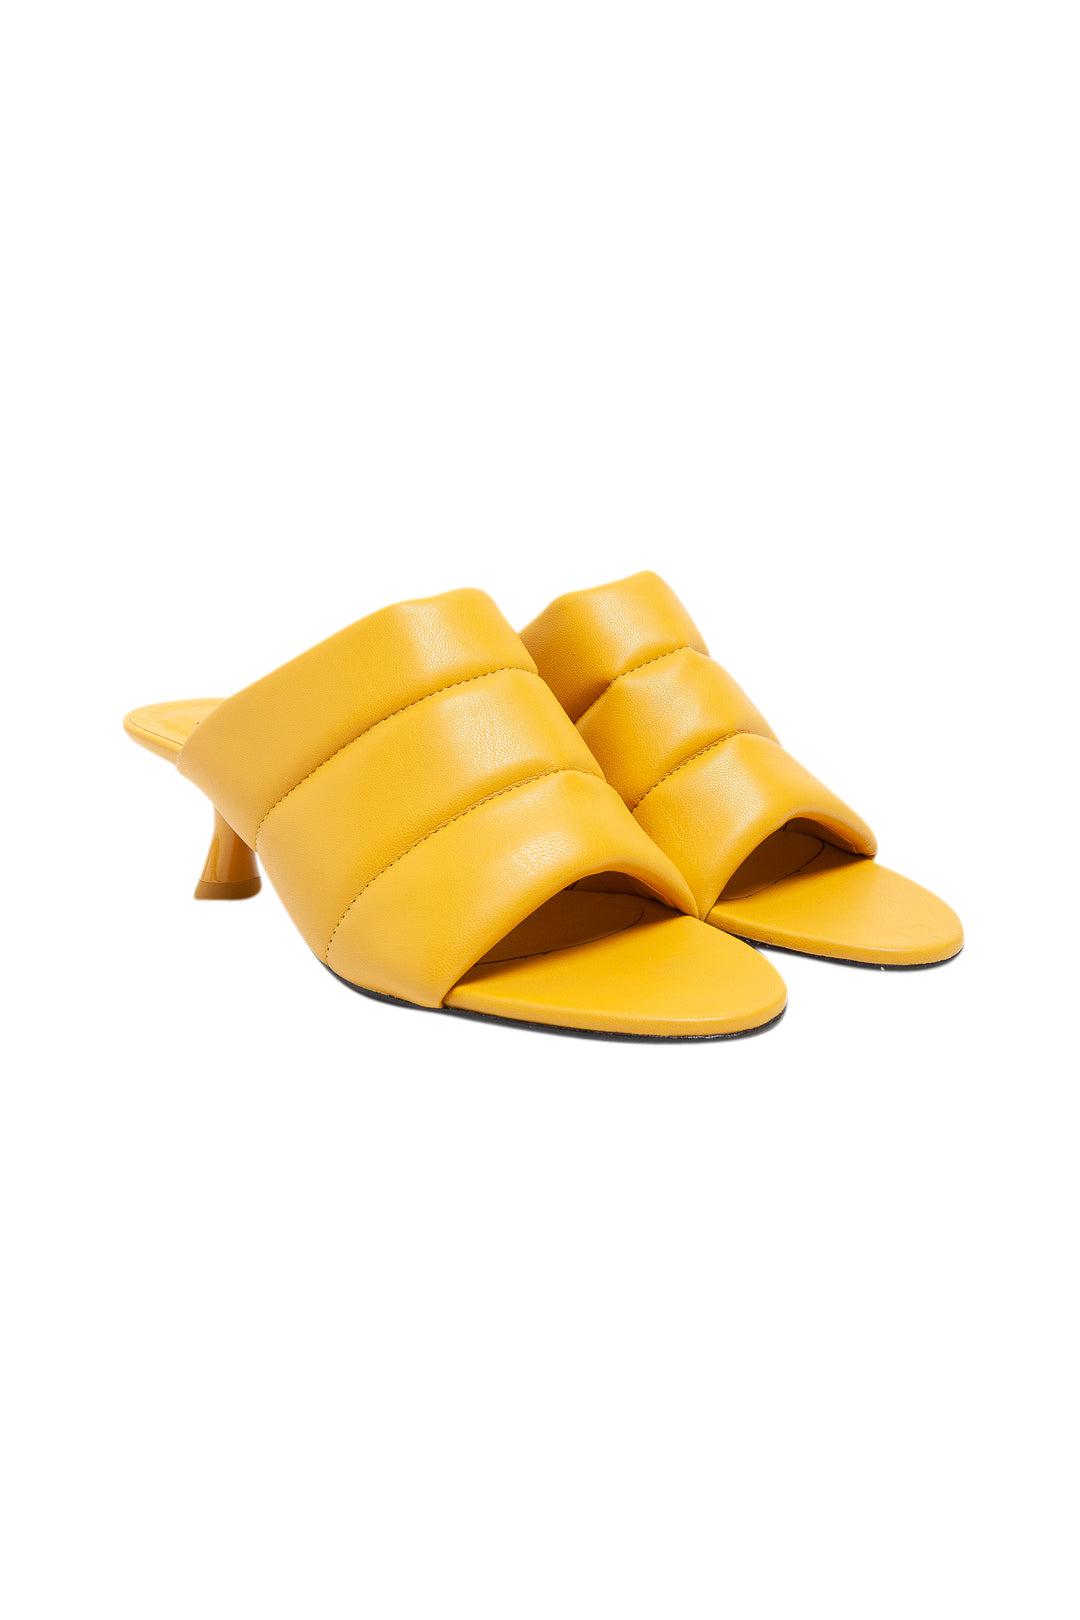 SIMON MILLER-Vegan quilted heel sandals-dgallerystore